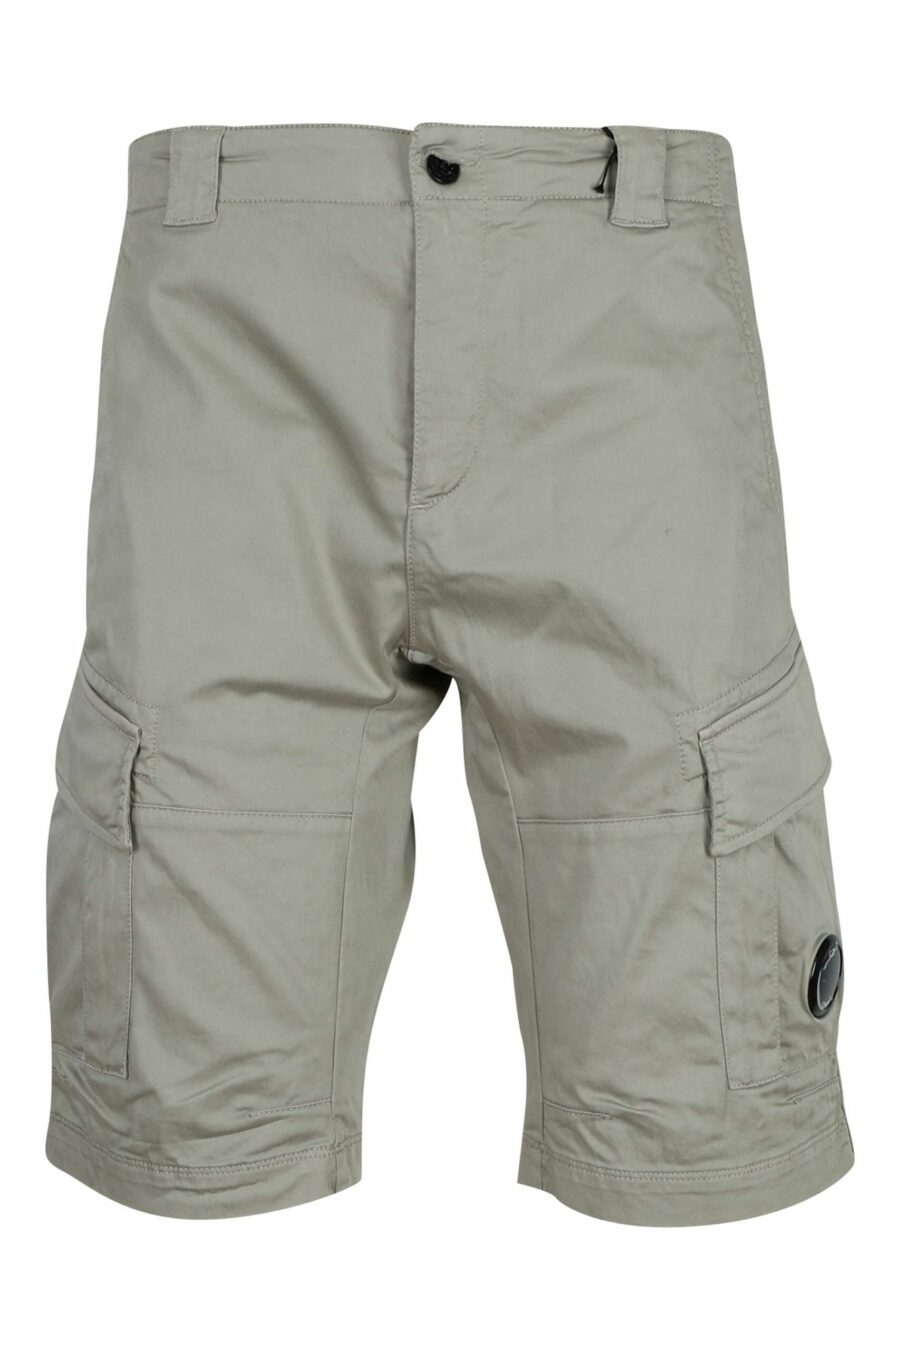 Pantalón corto beige estilo cargo con minilogo lente - 7620943697841 scaled